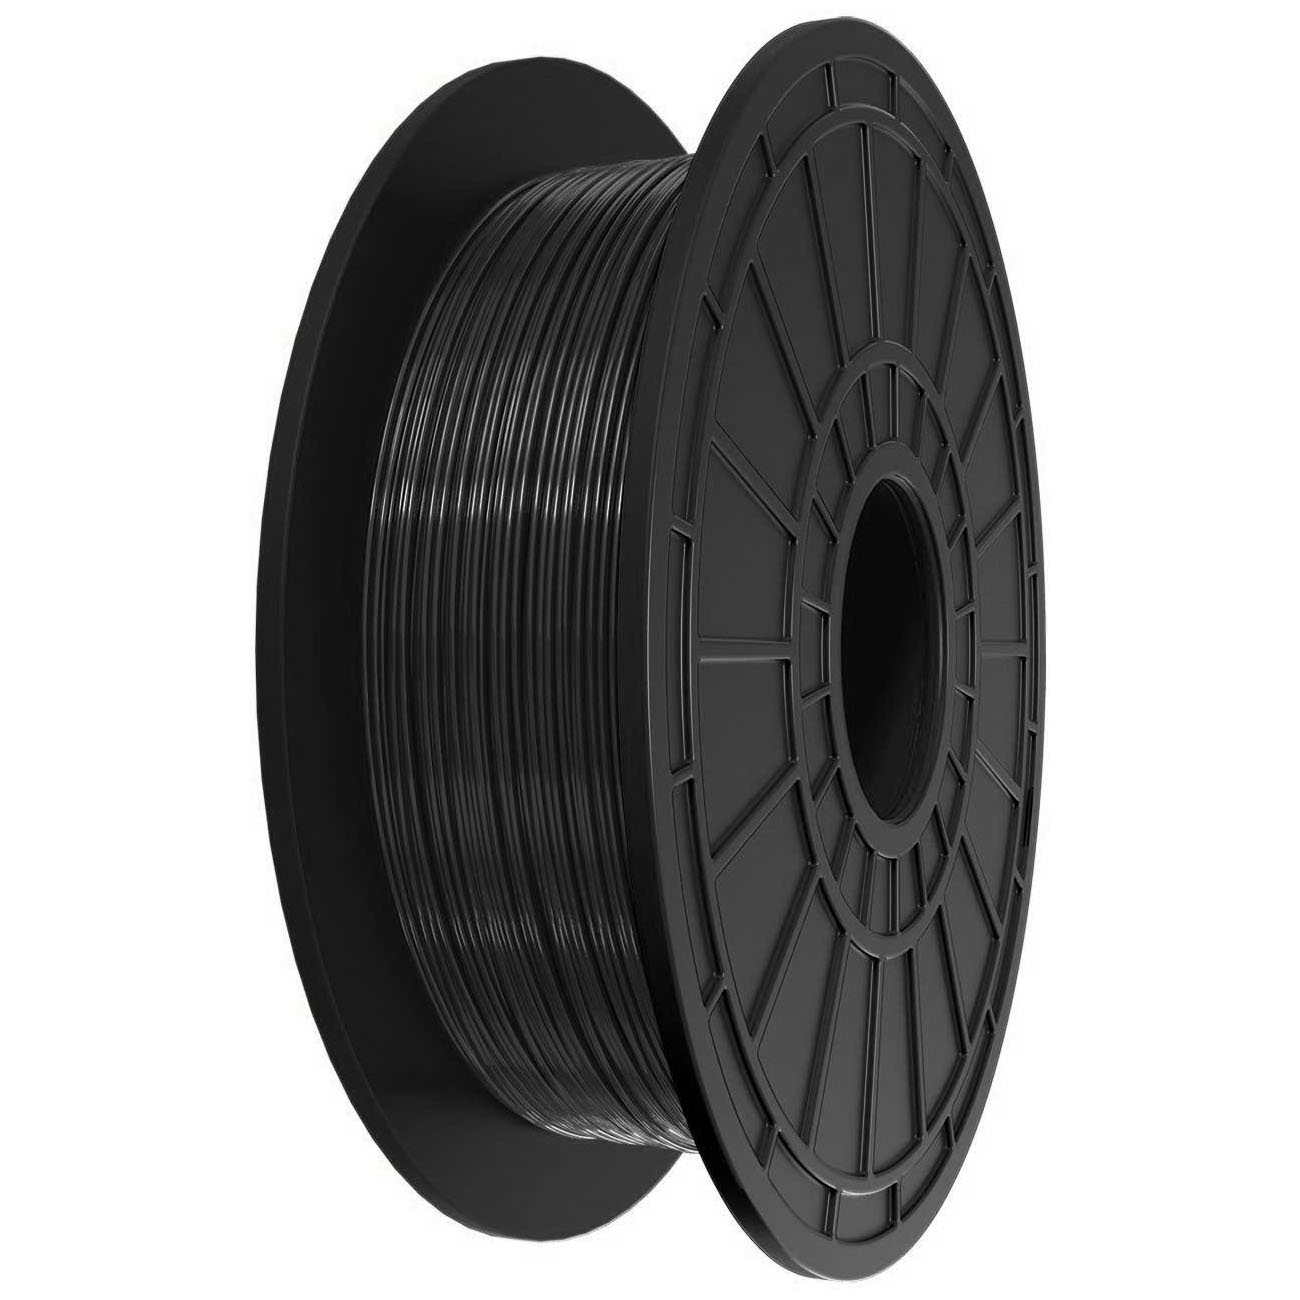 0.5kg de Carrete de Filamento ABS Negro de 1.75mm (2 piezas) - Haga clic para ampliar